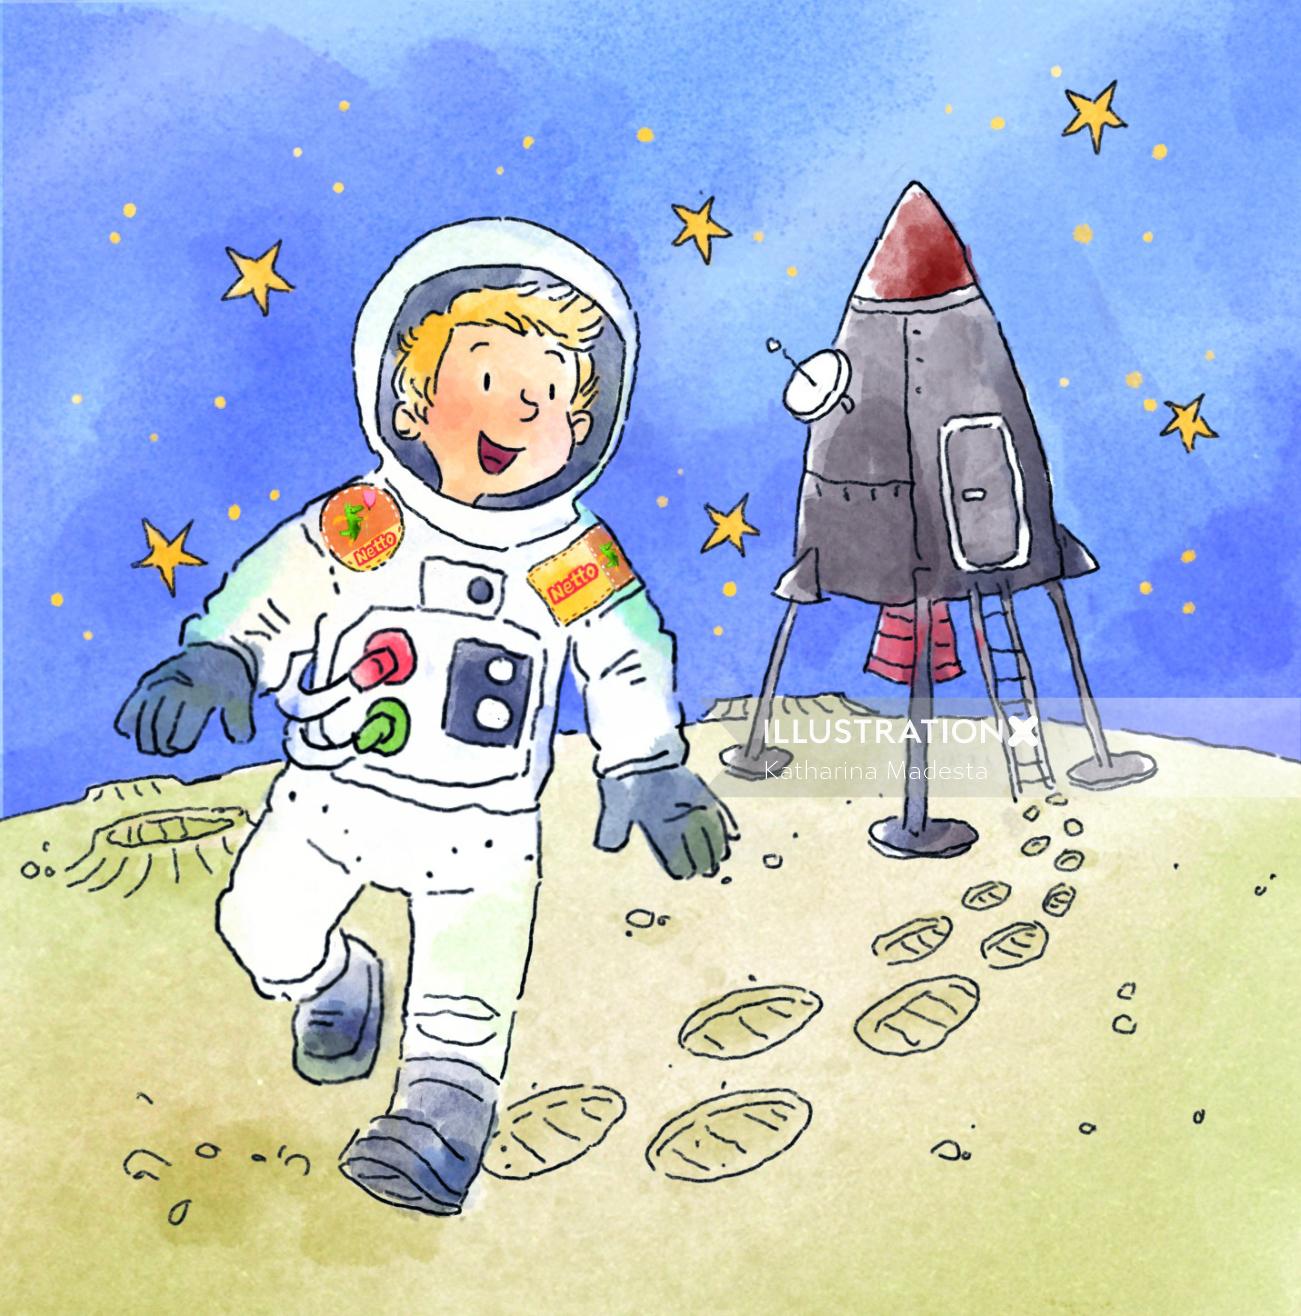 Cartoon & Humour boy astronaut running on moon